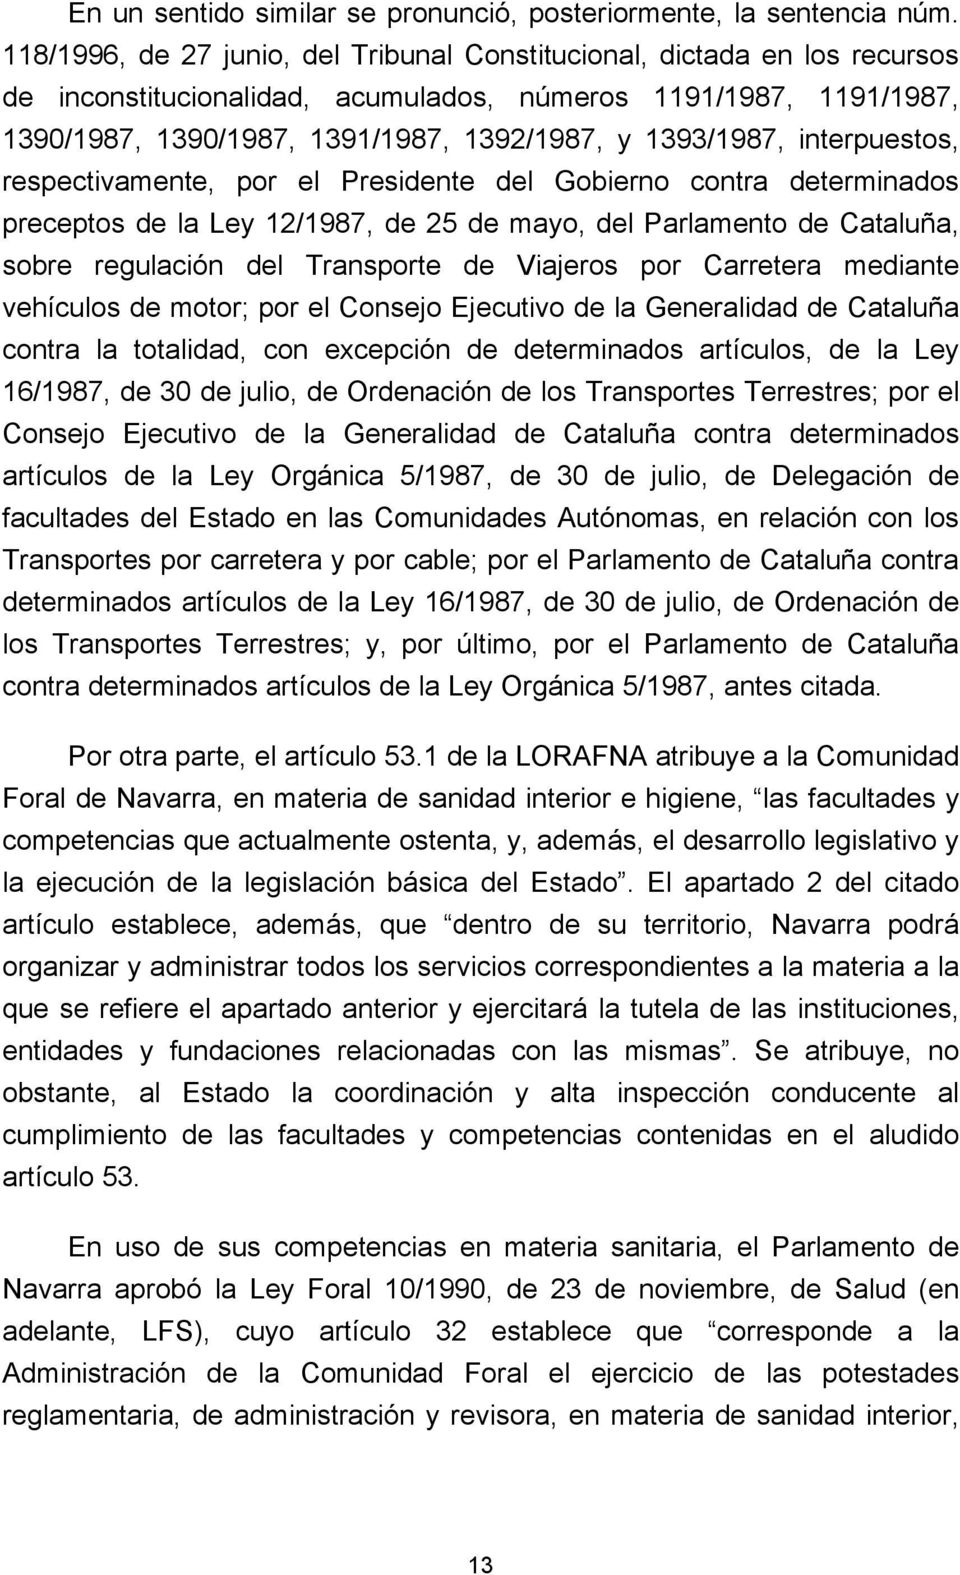 interpuestos, respectivamente, por el Presidente del Gobierno contra determinados preceptos de la Ley 12/1987, de 25 de mayo, del Parlamento de Cataluña, sobre regulación del Transporte de Viajeros